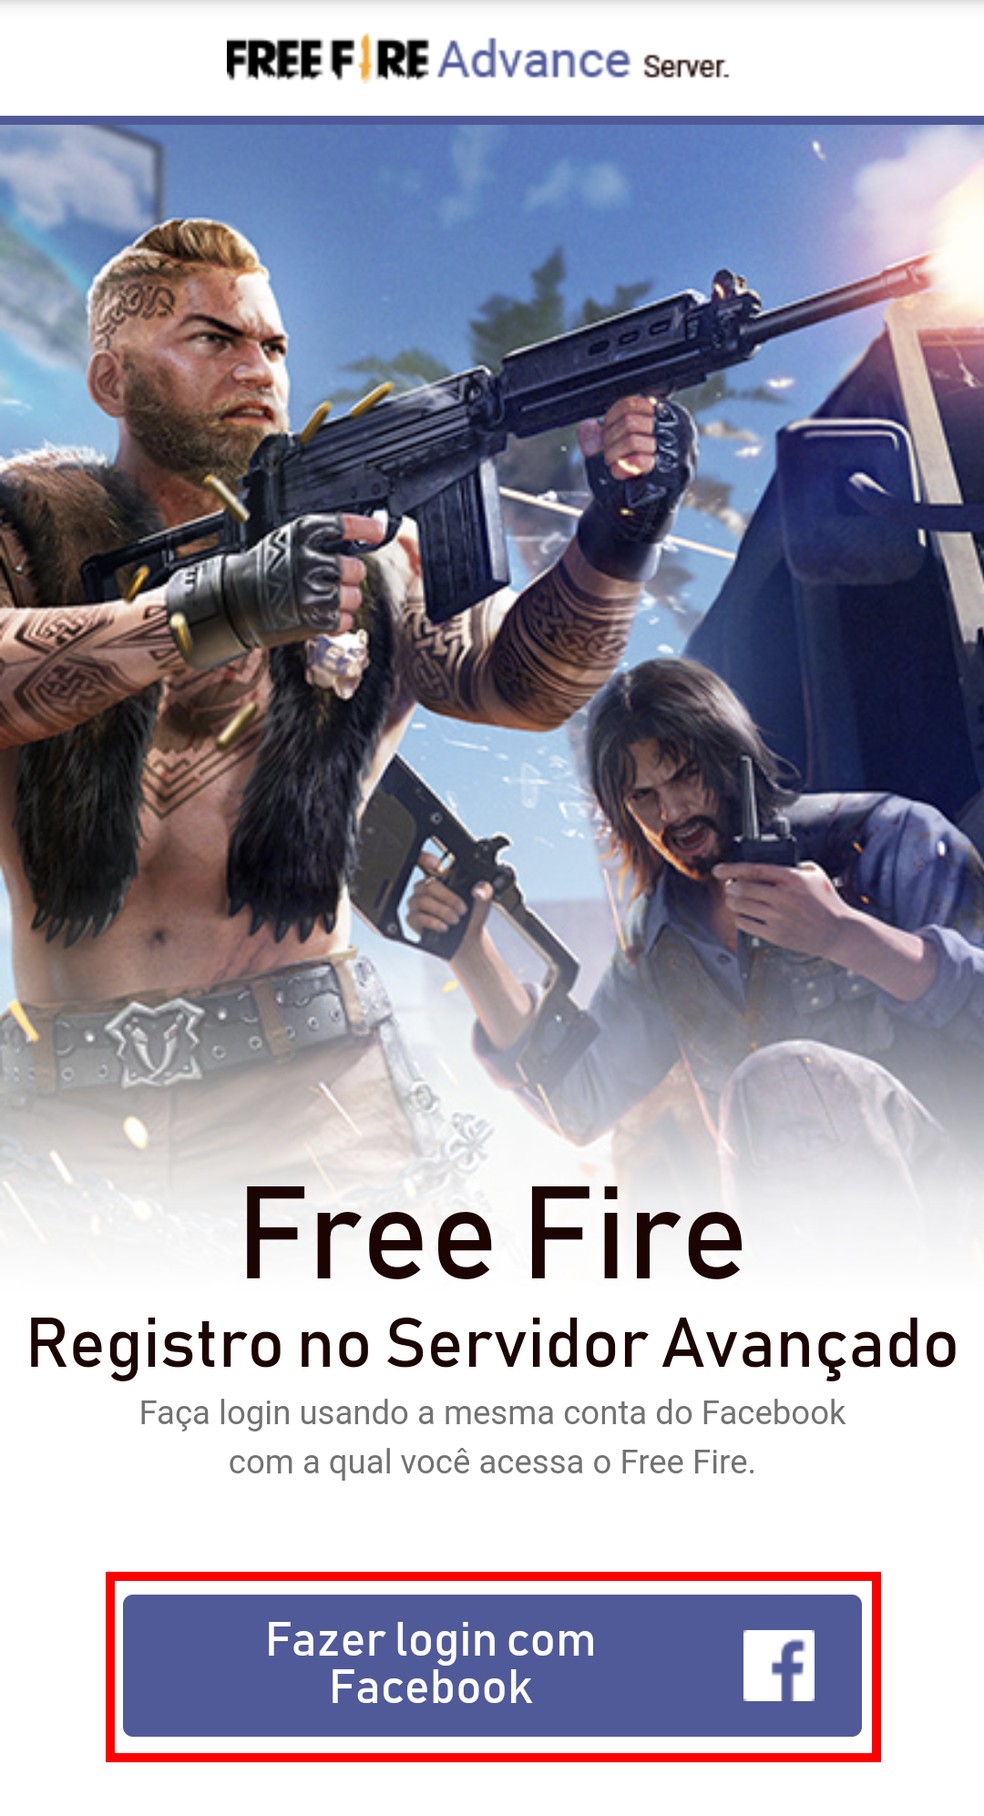 Free Fire Advance: O que é e como fazer o download do servidor